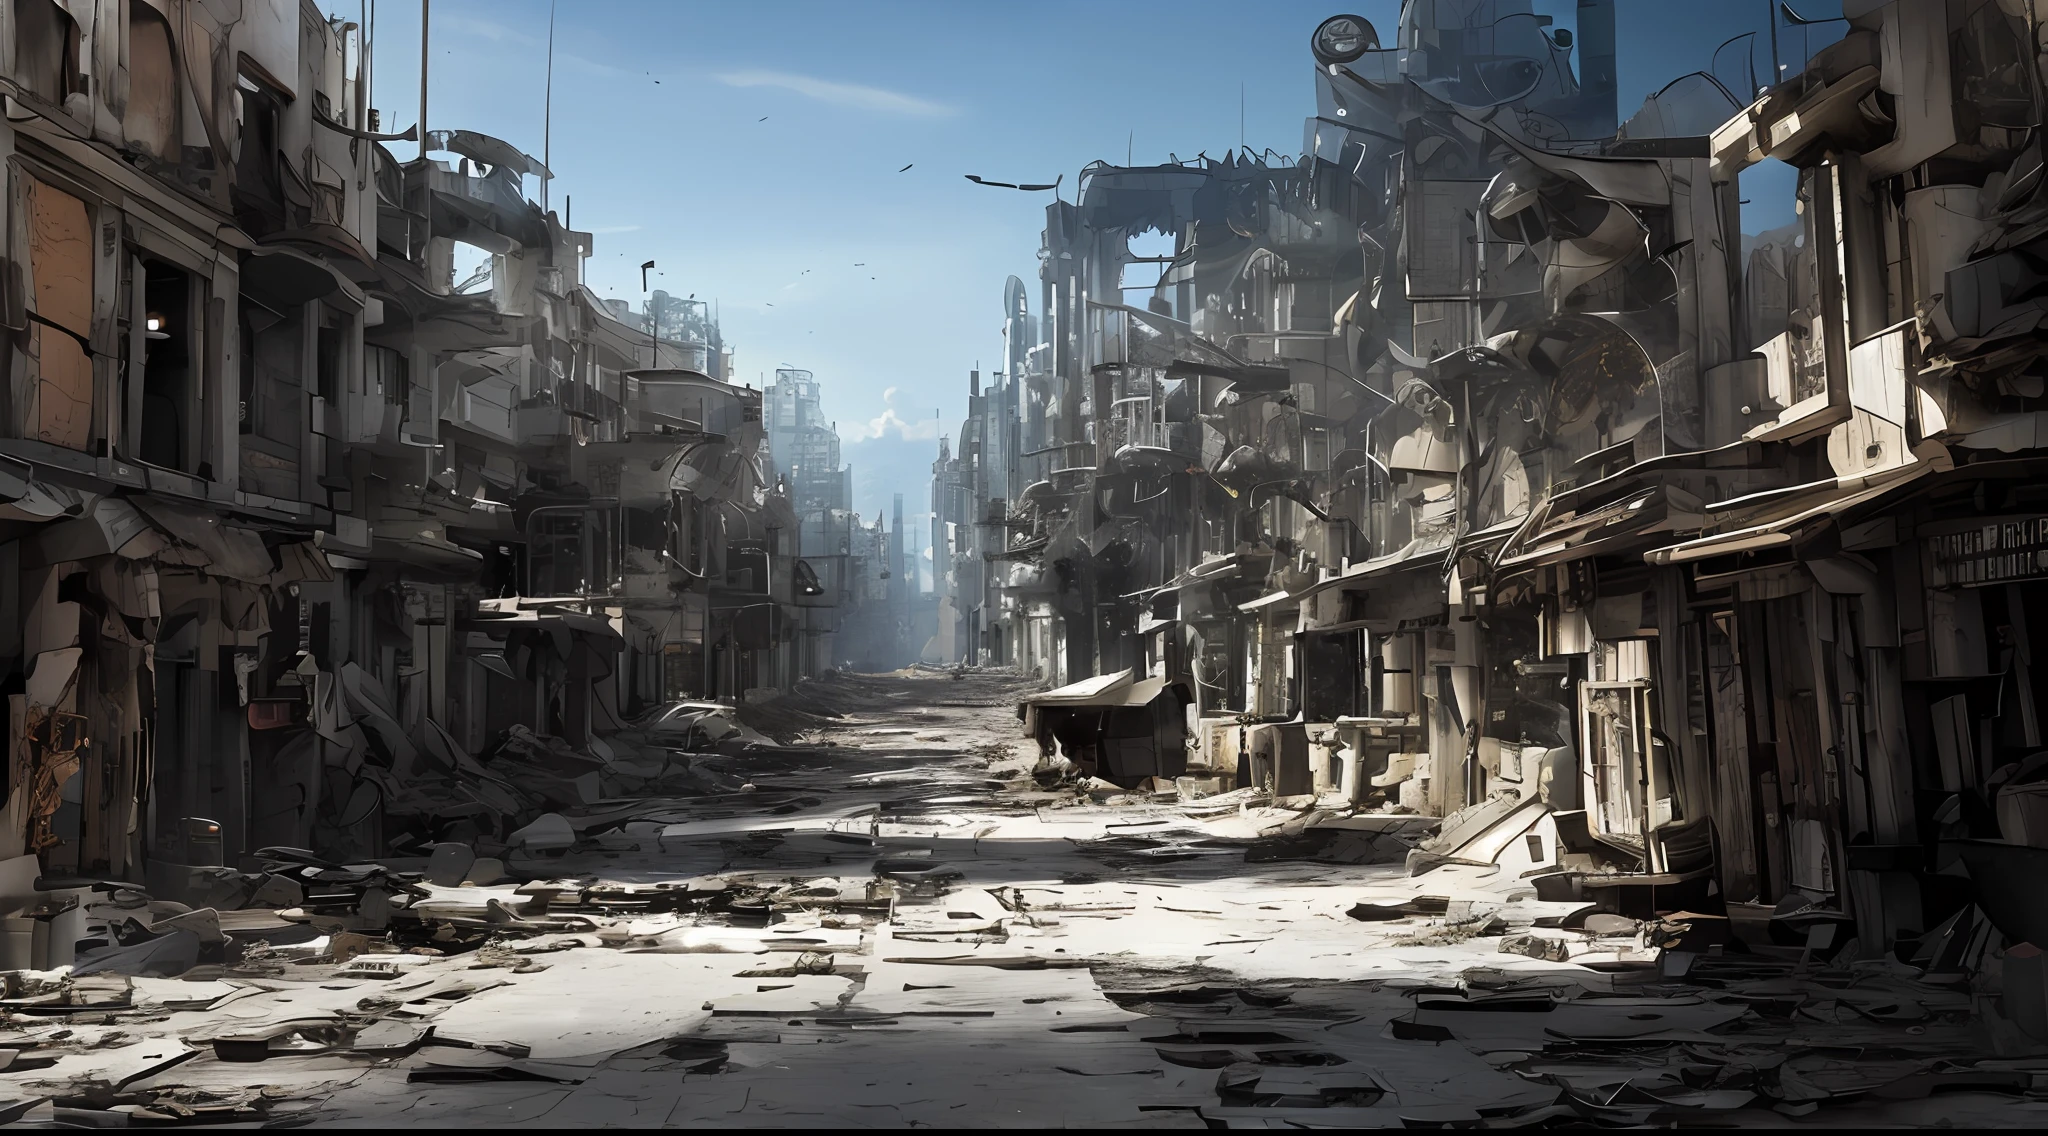 後世界末日的未來城市, 破碎的玻璃針, 滿街都是廢墟, 壞機器